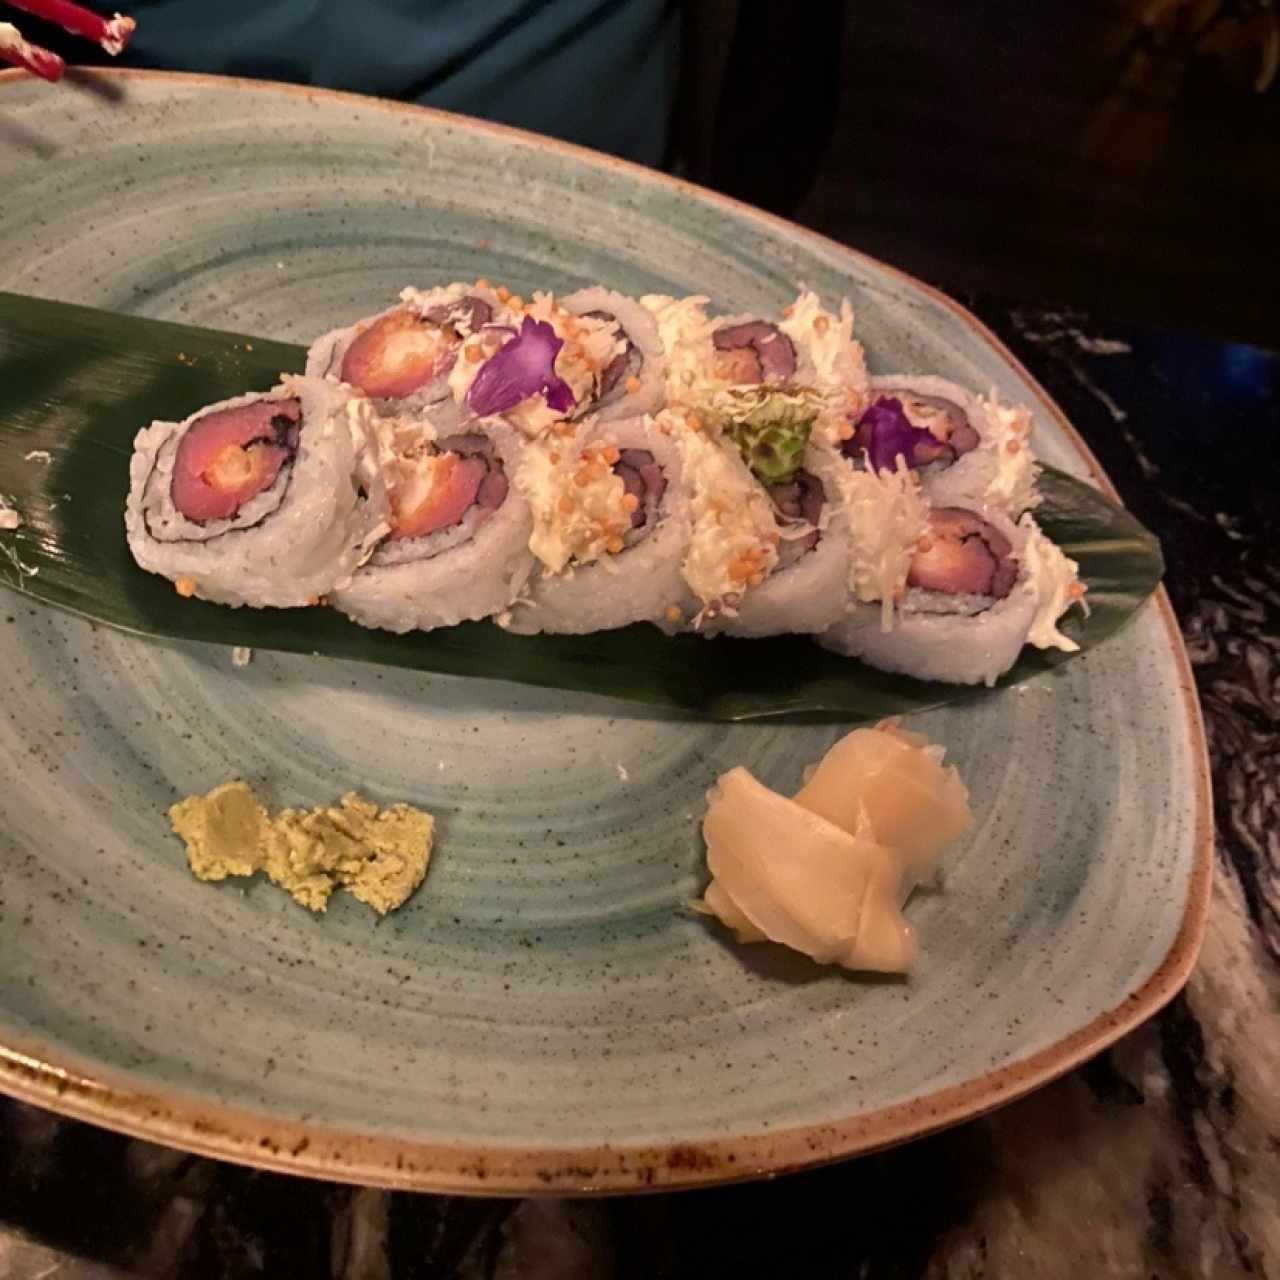 Nagoya rolls